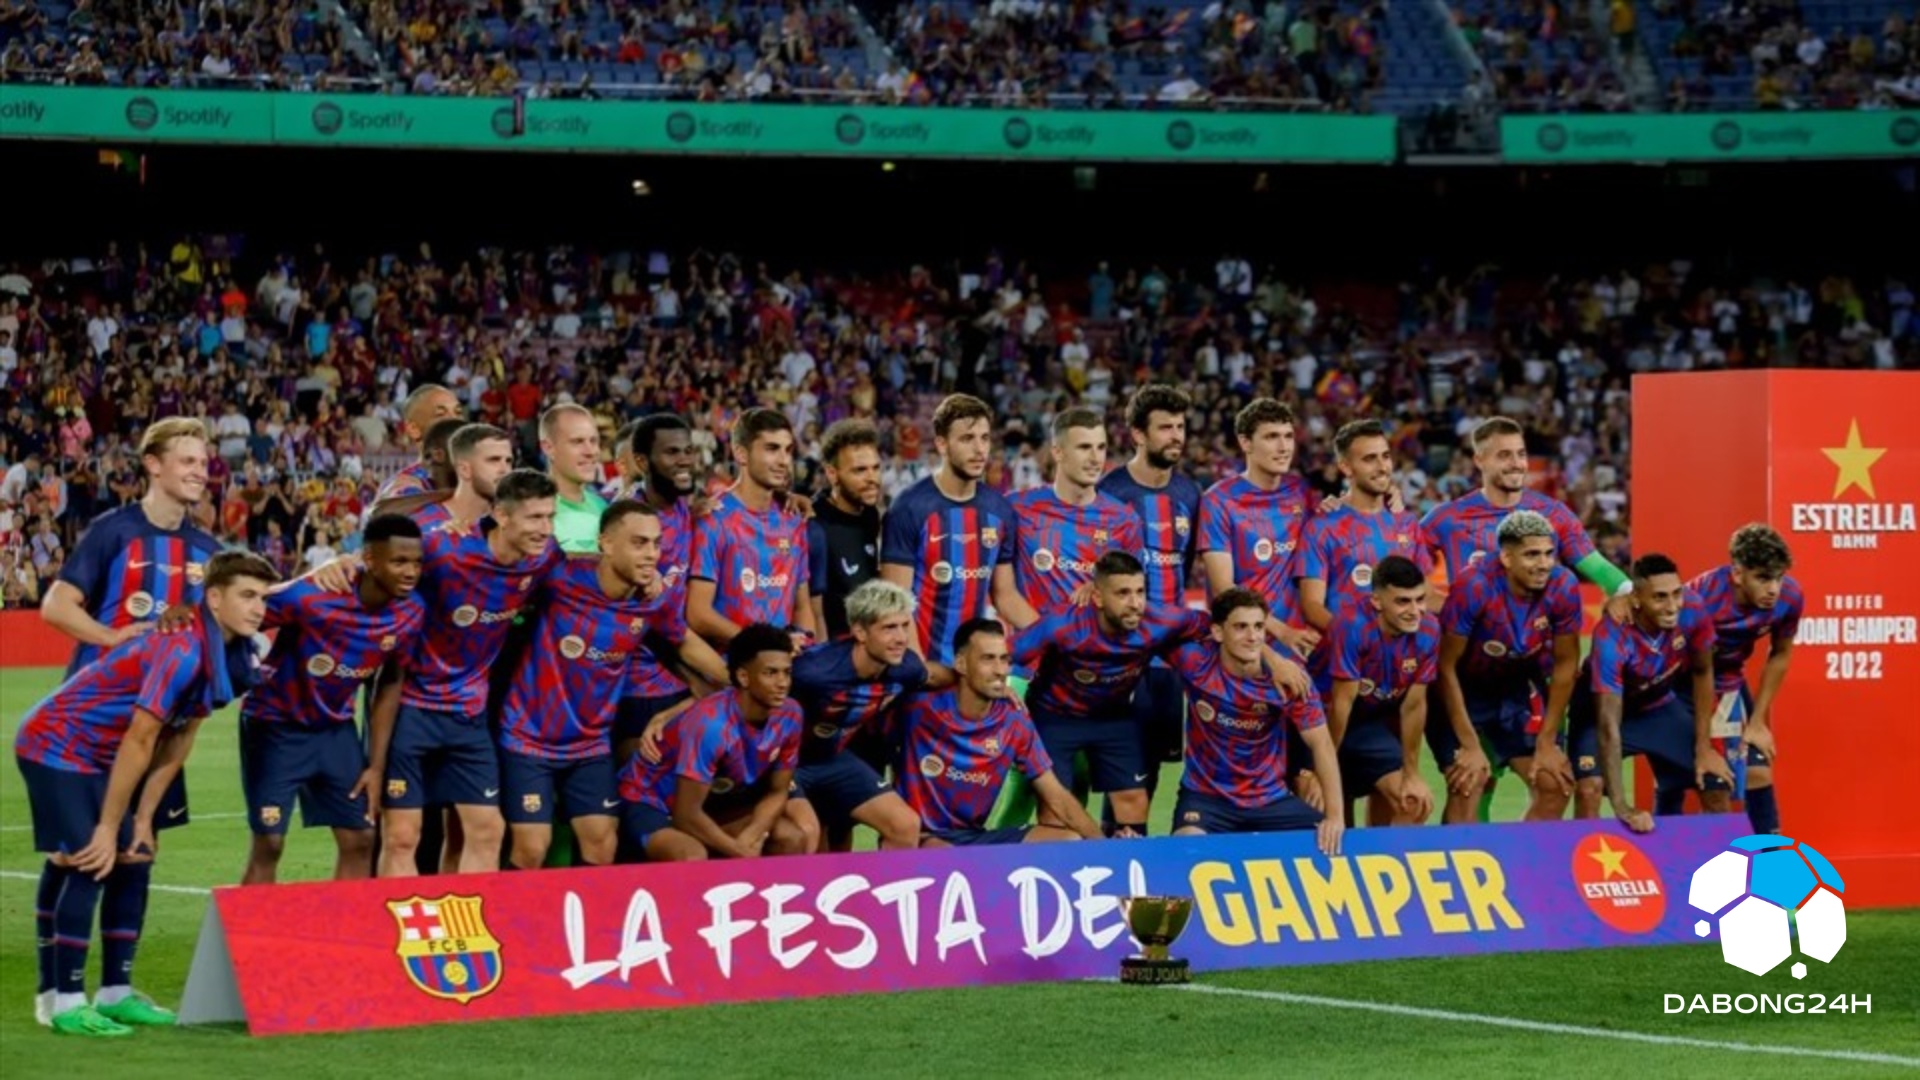 Barcelona (Barca) - Câu lạc bộ bóng đá danh tiếng với lối chơi tiki-taka